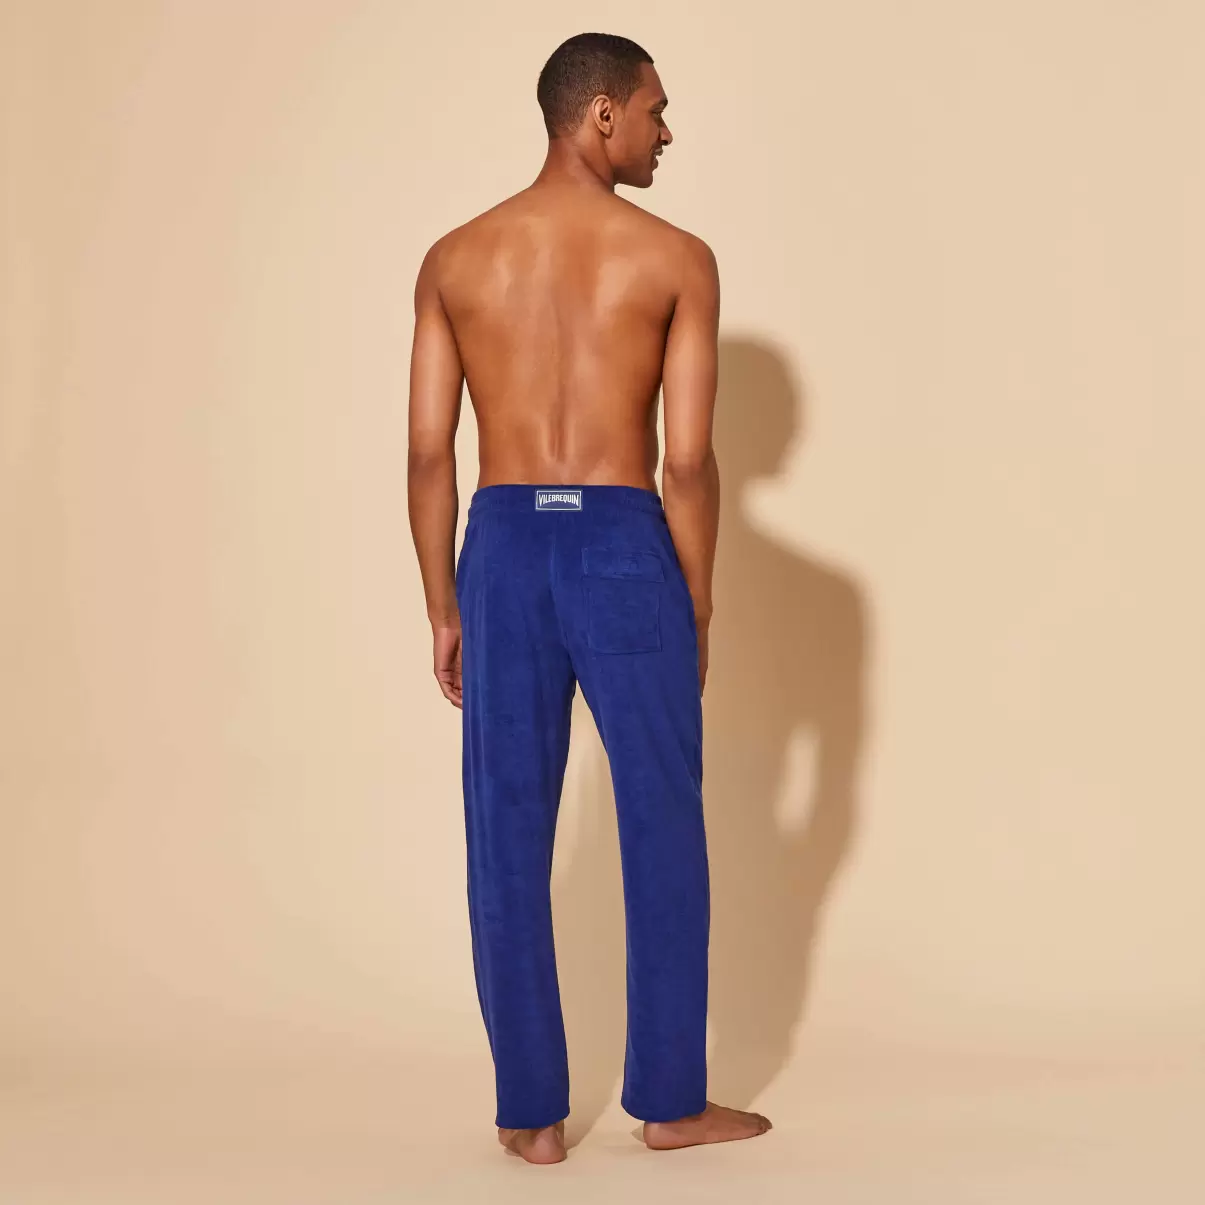 Ink / Azul Hombre Compra Vilebrequin Pantalones Pantalón De Algodón - 1